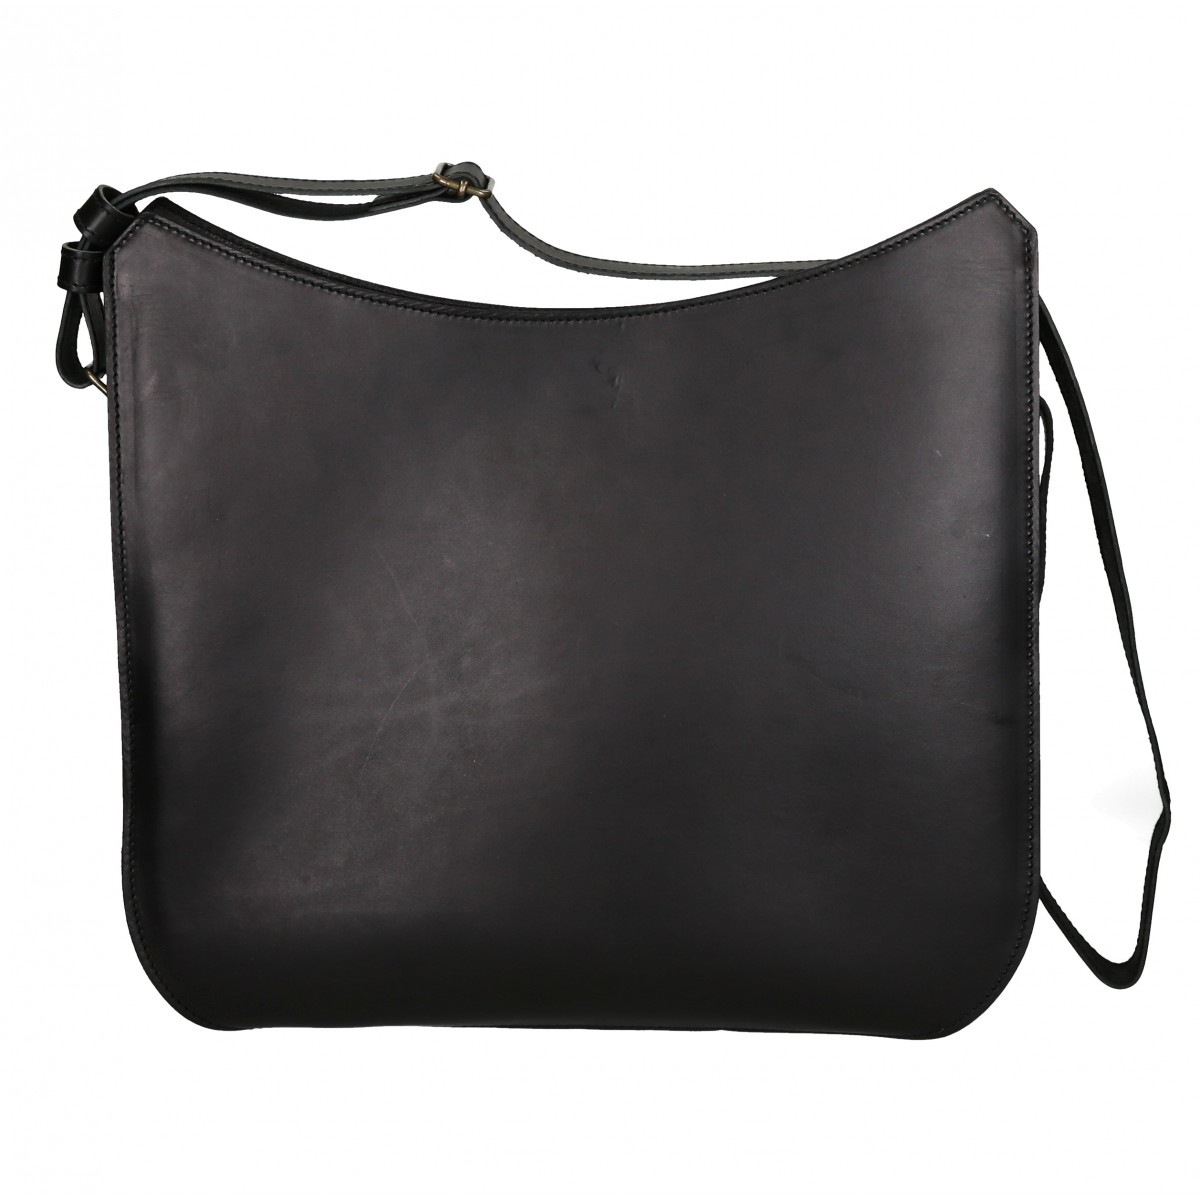 Handmade black leather shoulder bag long strap | Gianluca - The leather craftsman